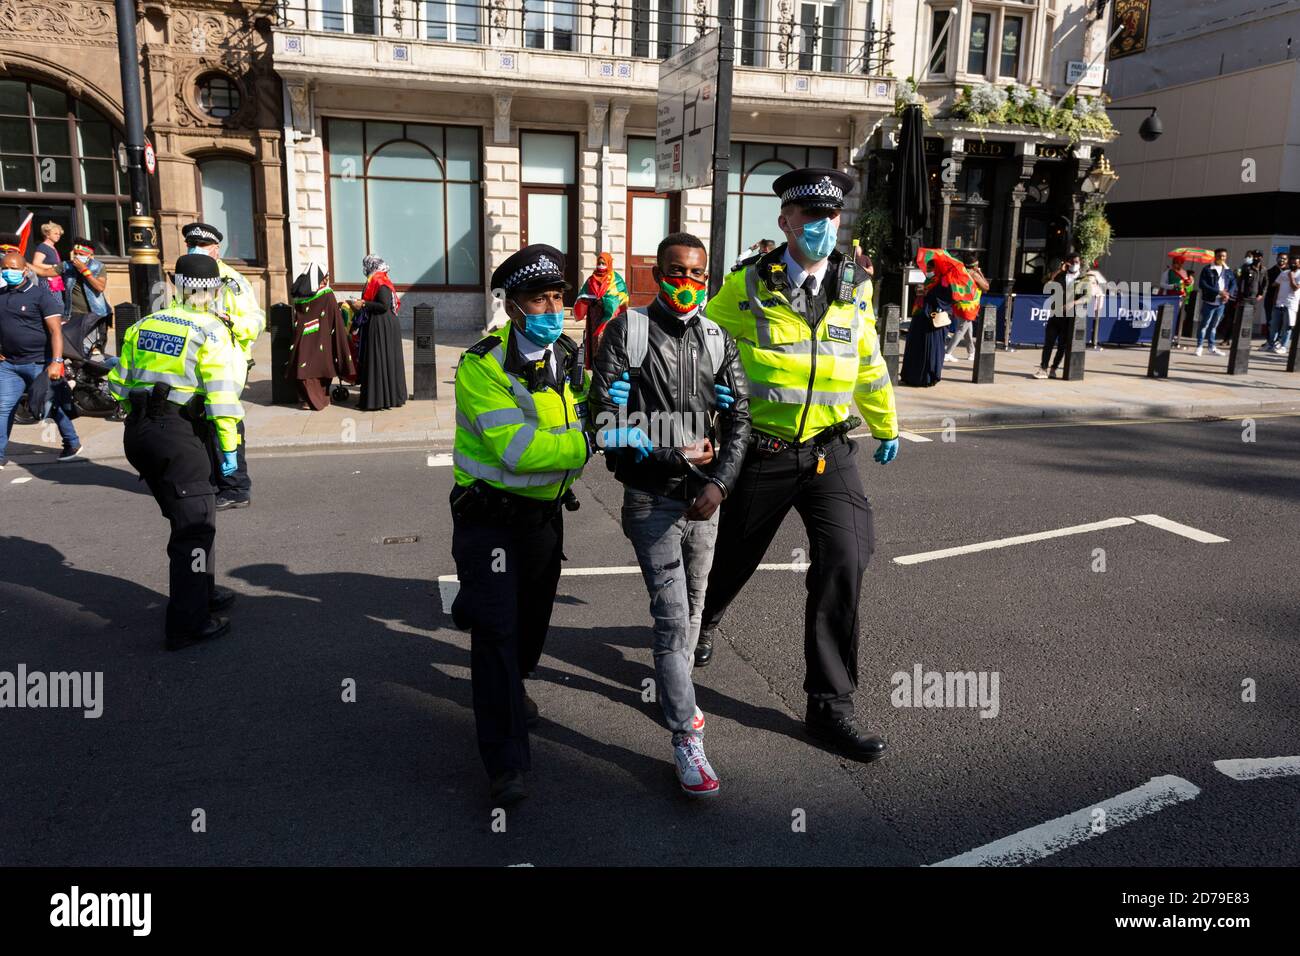 La policía arresta a un manifestante etíope por violar las restricciones de distanciamiento social del COVID-19, manifestación del pueblo oromo, Whitehall, Londres, 10 de septiembre Foto de stock